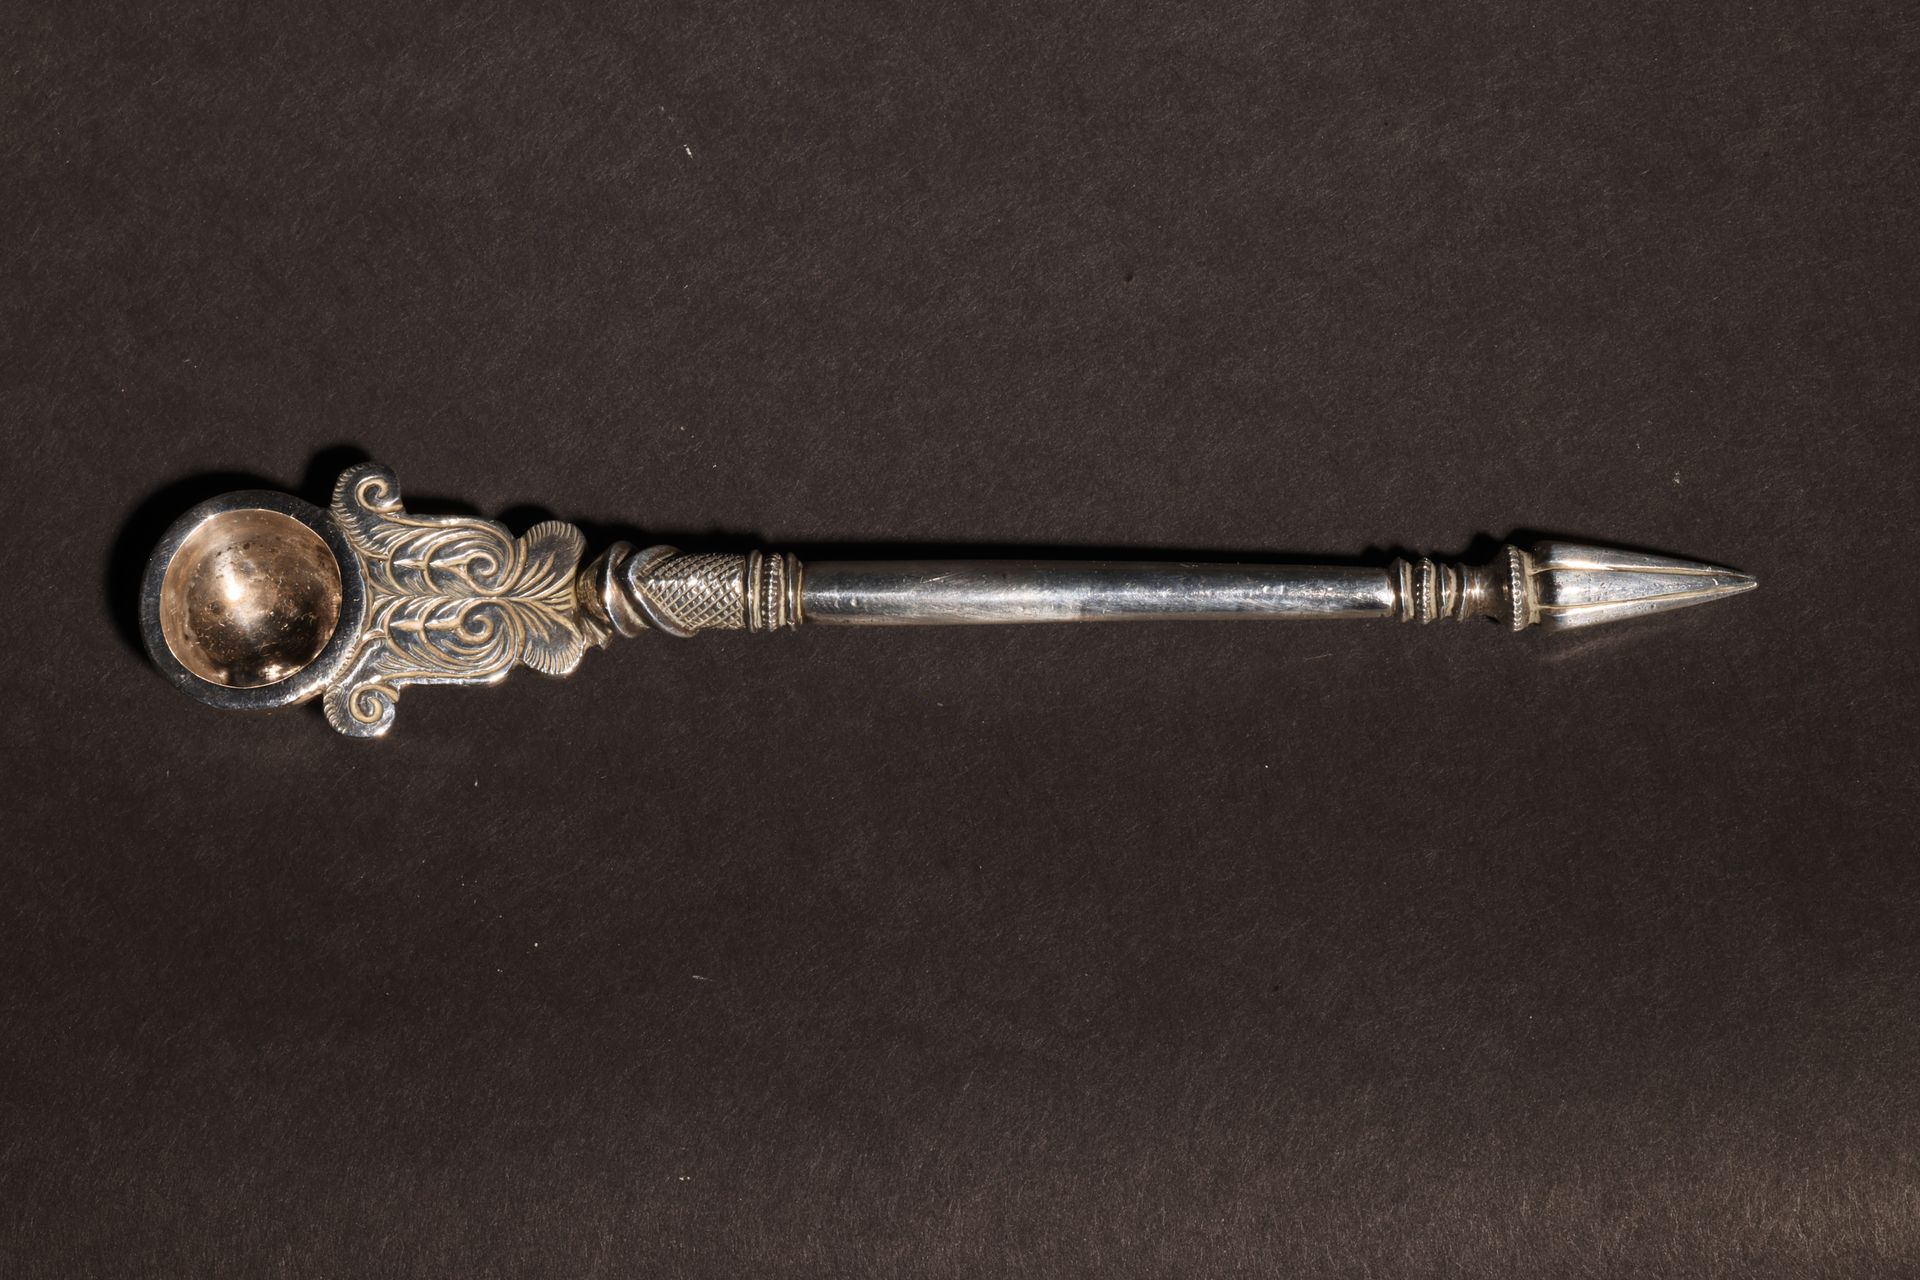 An Antique Antique South Asian Opium Spoon 古老的南亚鸦片汤匙尺寸。约6英寸长